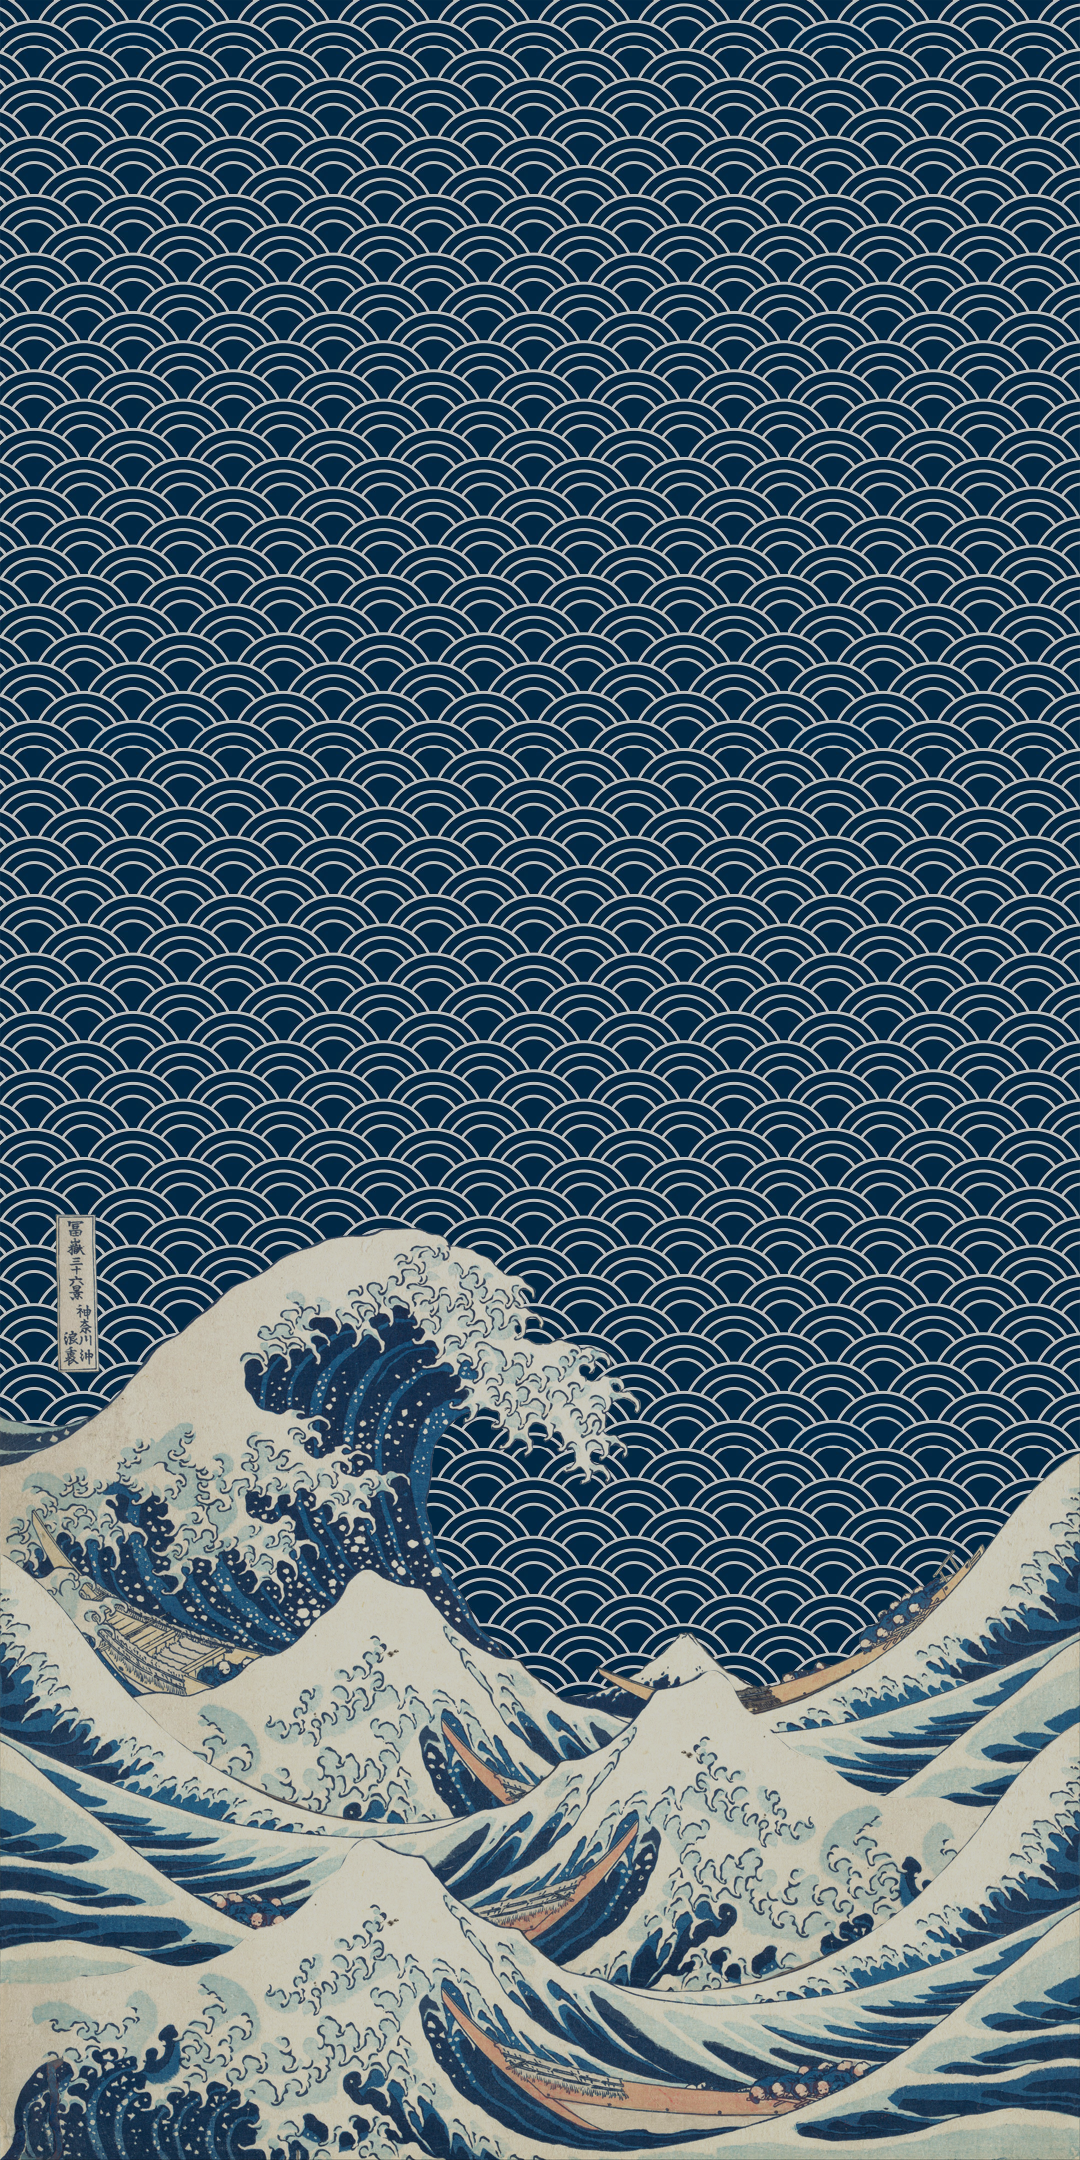 Kanagawa Hokusai Japanese Art Phone Pattern 1080x2160